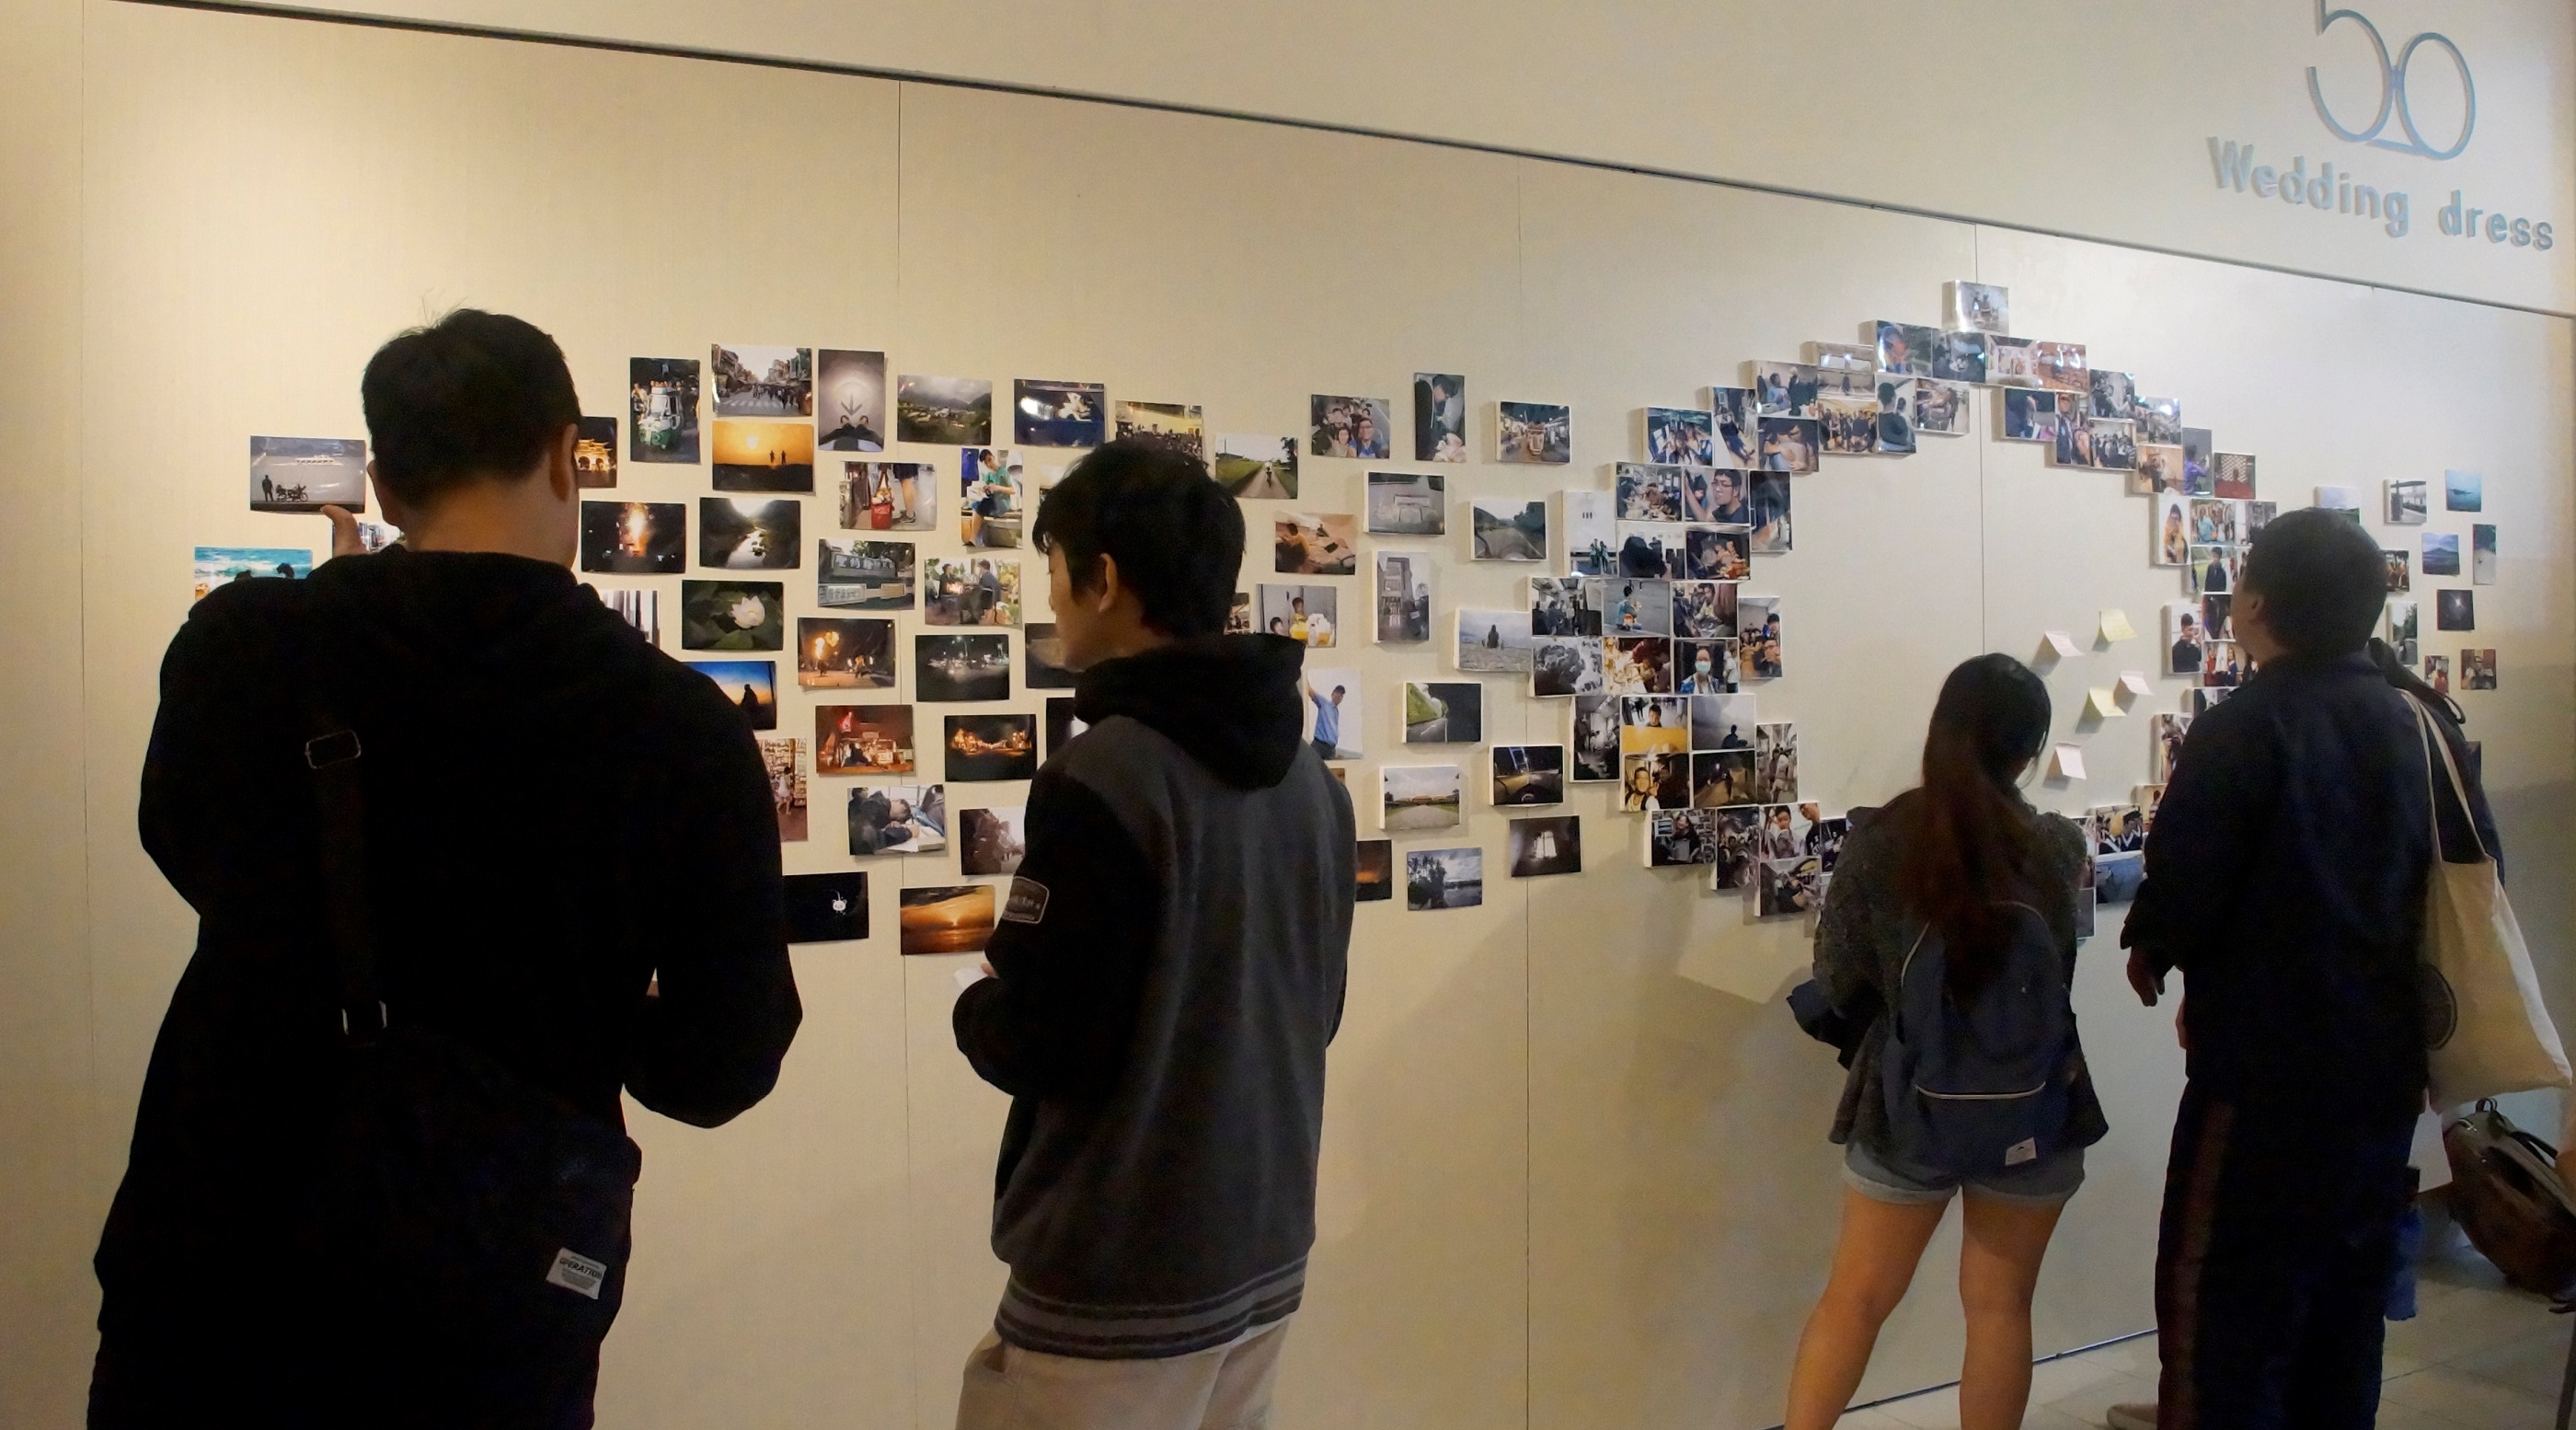 「在台灣的那些時間」攝影展，展出蕭銓升200多張求學4年期間在台灣所拍攝的照片，一張照片、一個故事，一趟旅程、一段回憶，充滿拍攝當時的想像，吸引大批同學前往參觀